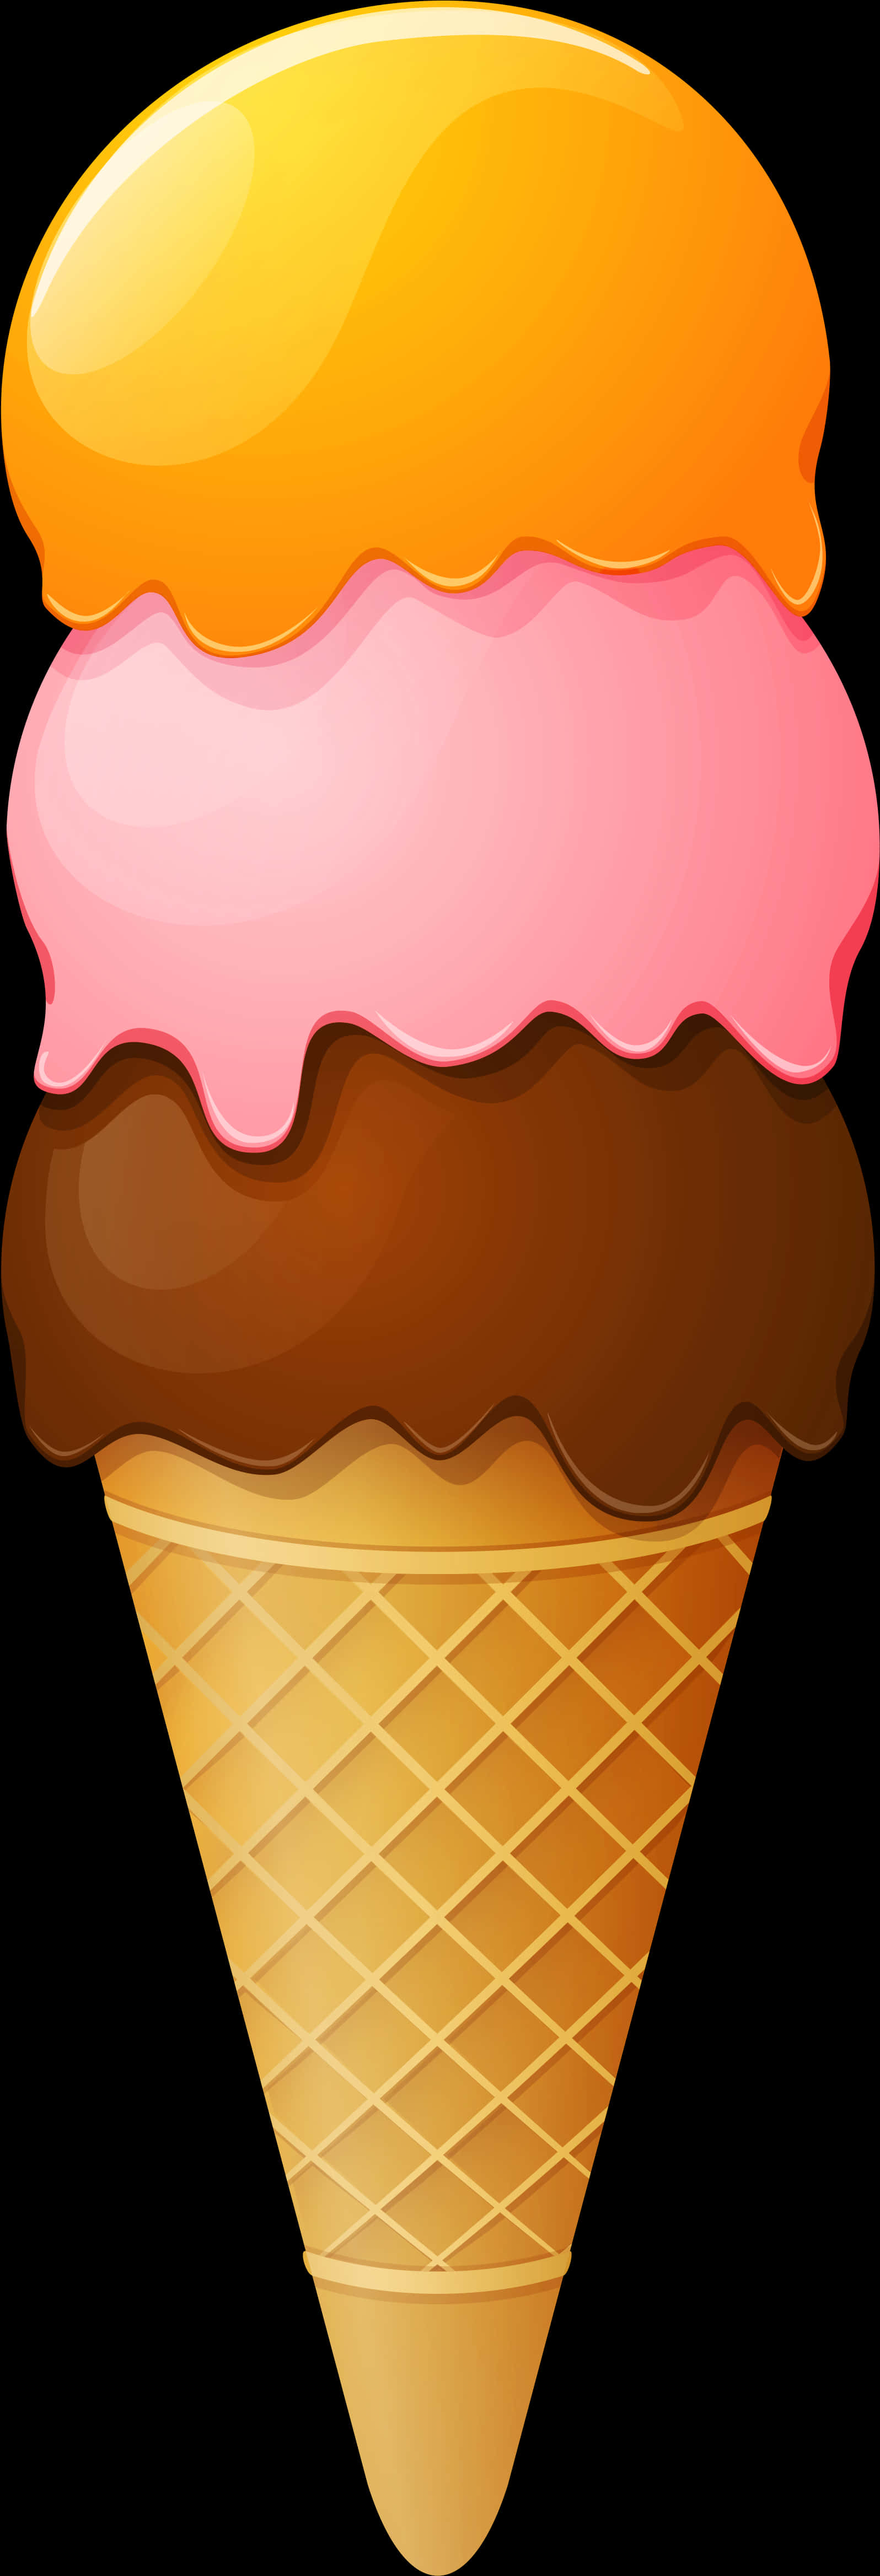 Triple Scoop Ice Cream Cone Clipart